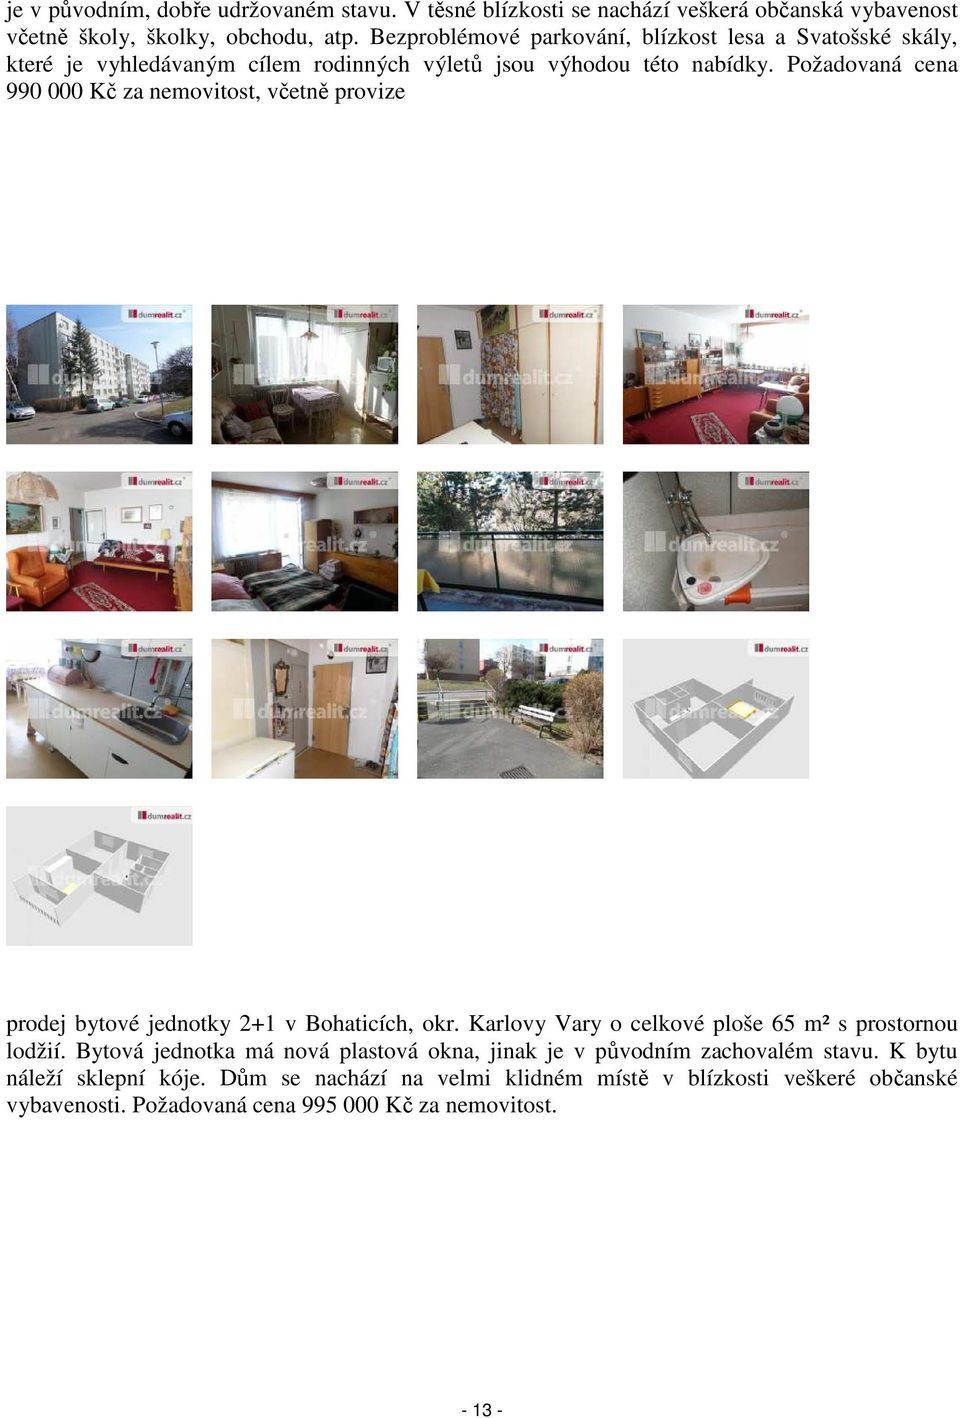 Požadovaná cena 990 000 Kč za nemovitost, včetně provize prodej bytové jednotky 2+1 v Bohaticích, okr. Karlovy Vary o celkové ploše 65 m² s prostornou lodžií.